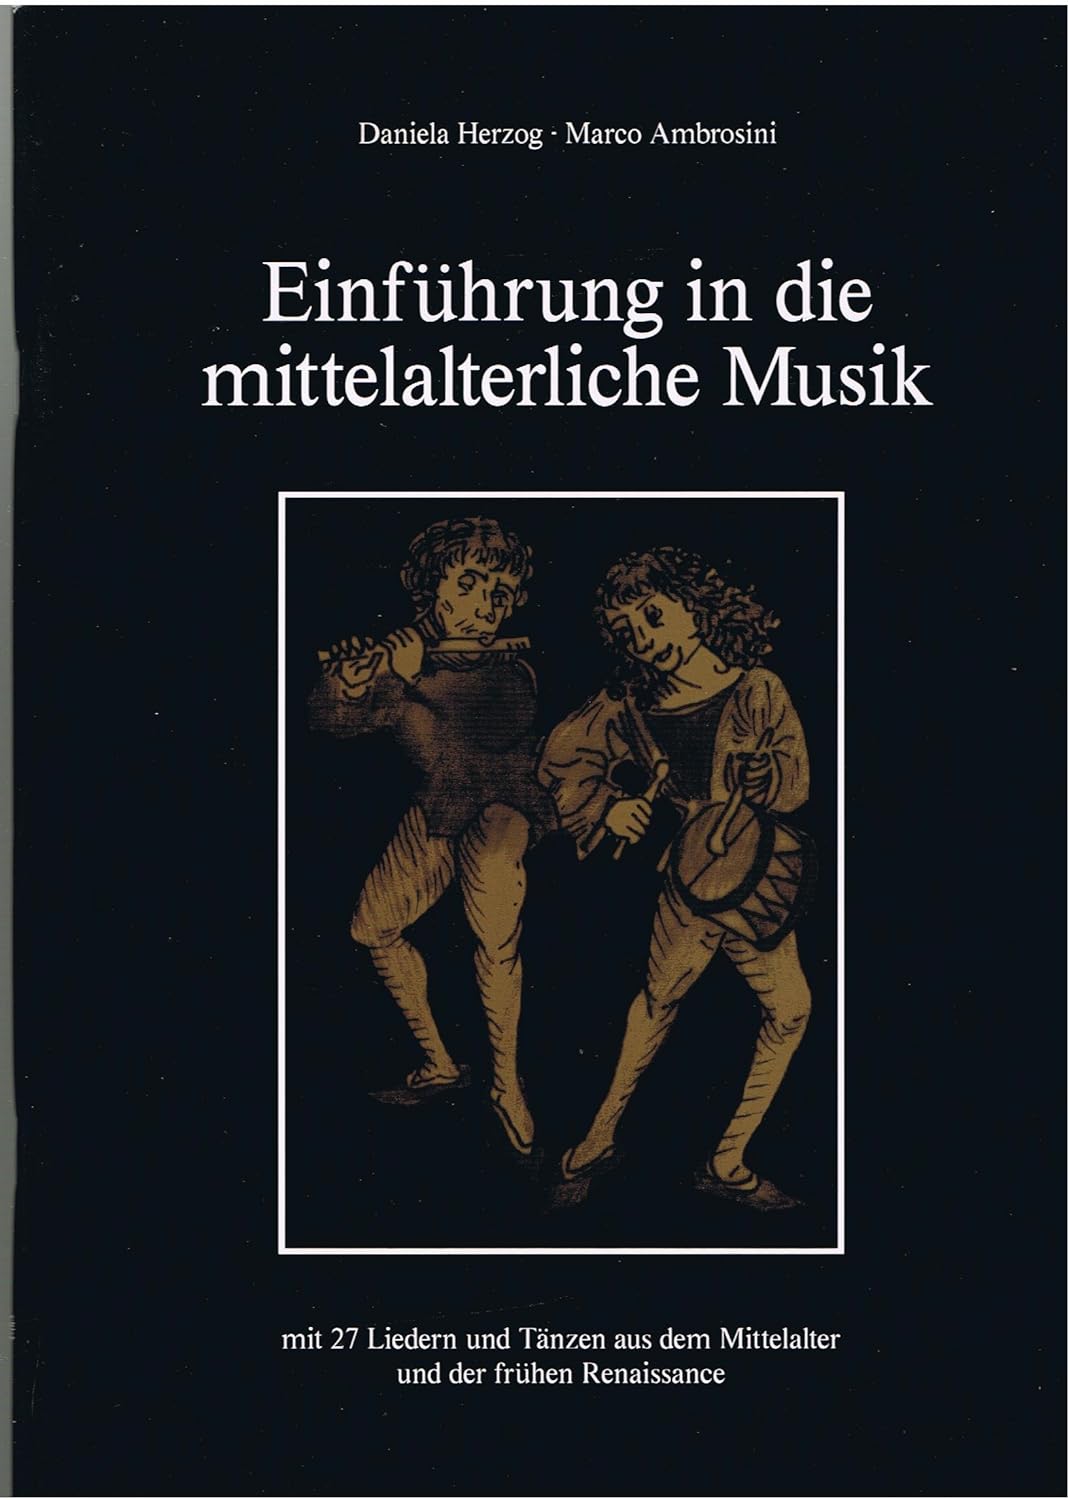 Einführung in die mittelalterliche Musik